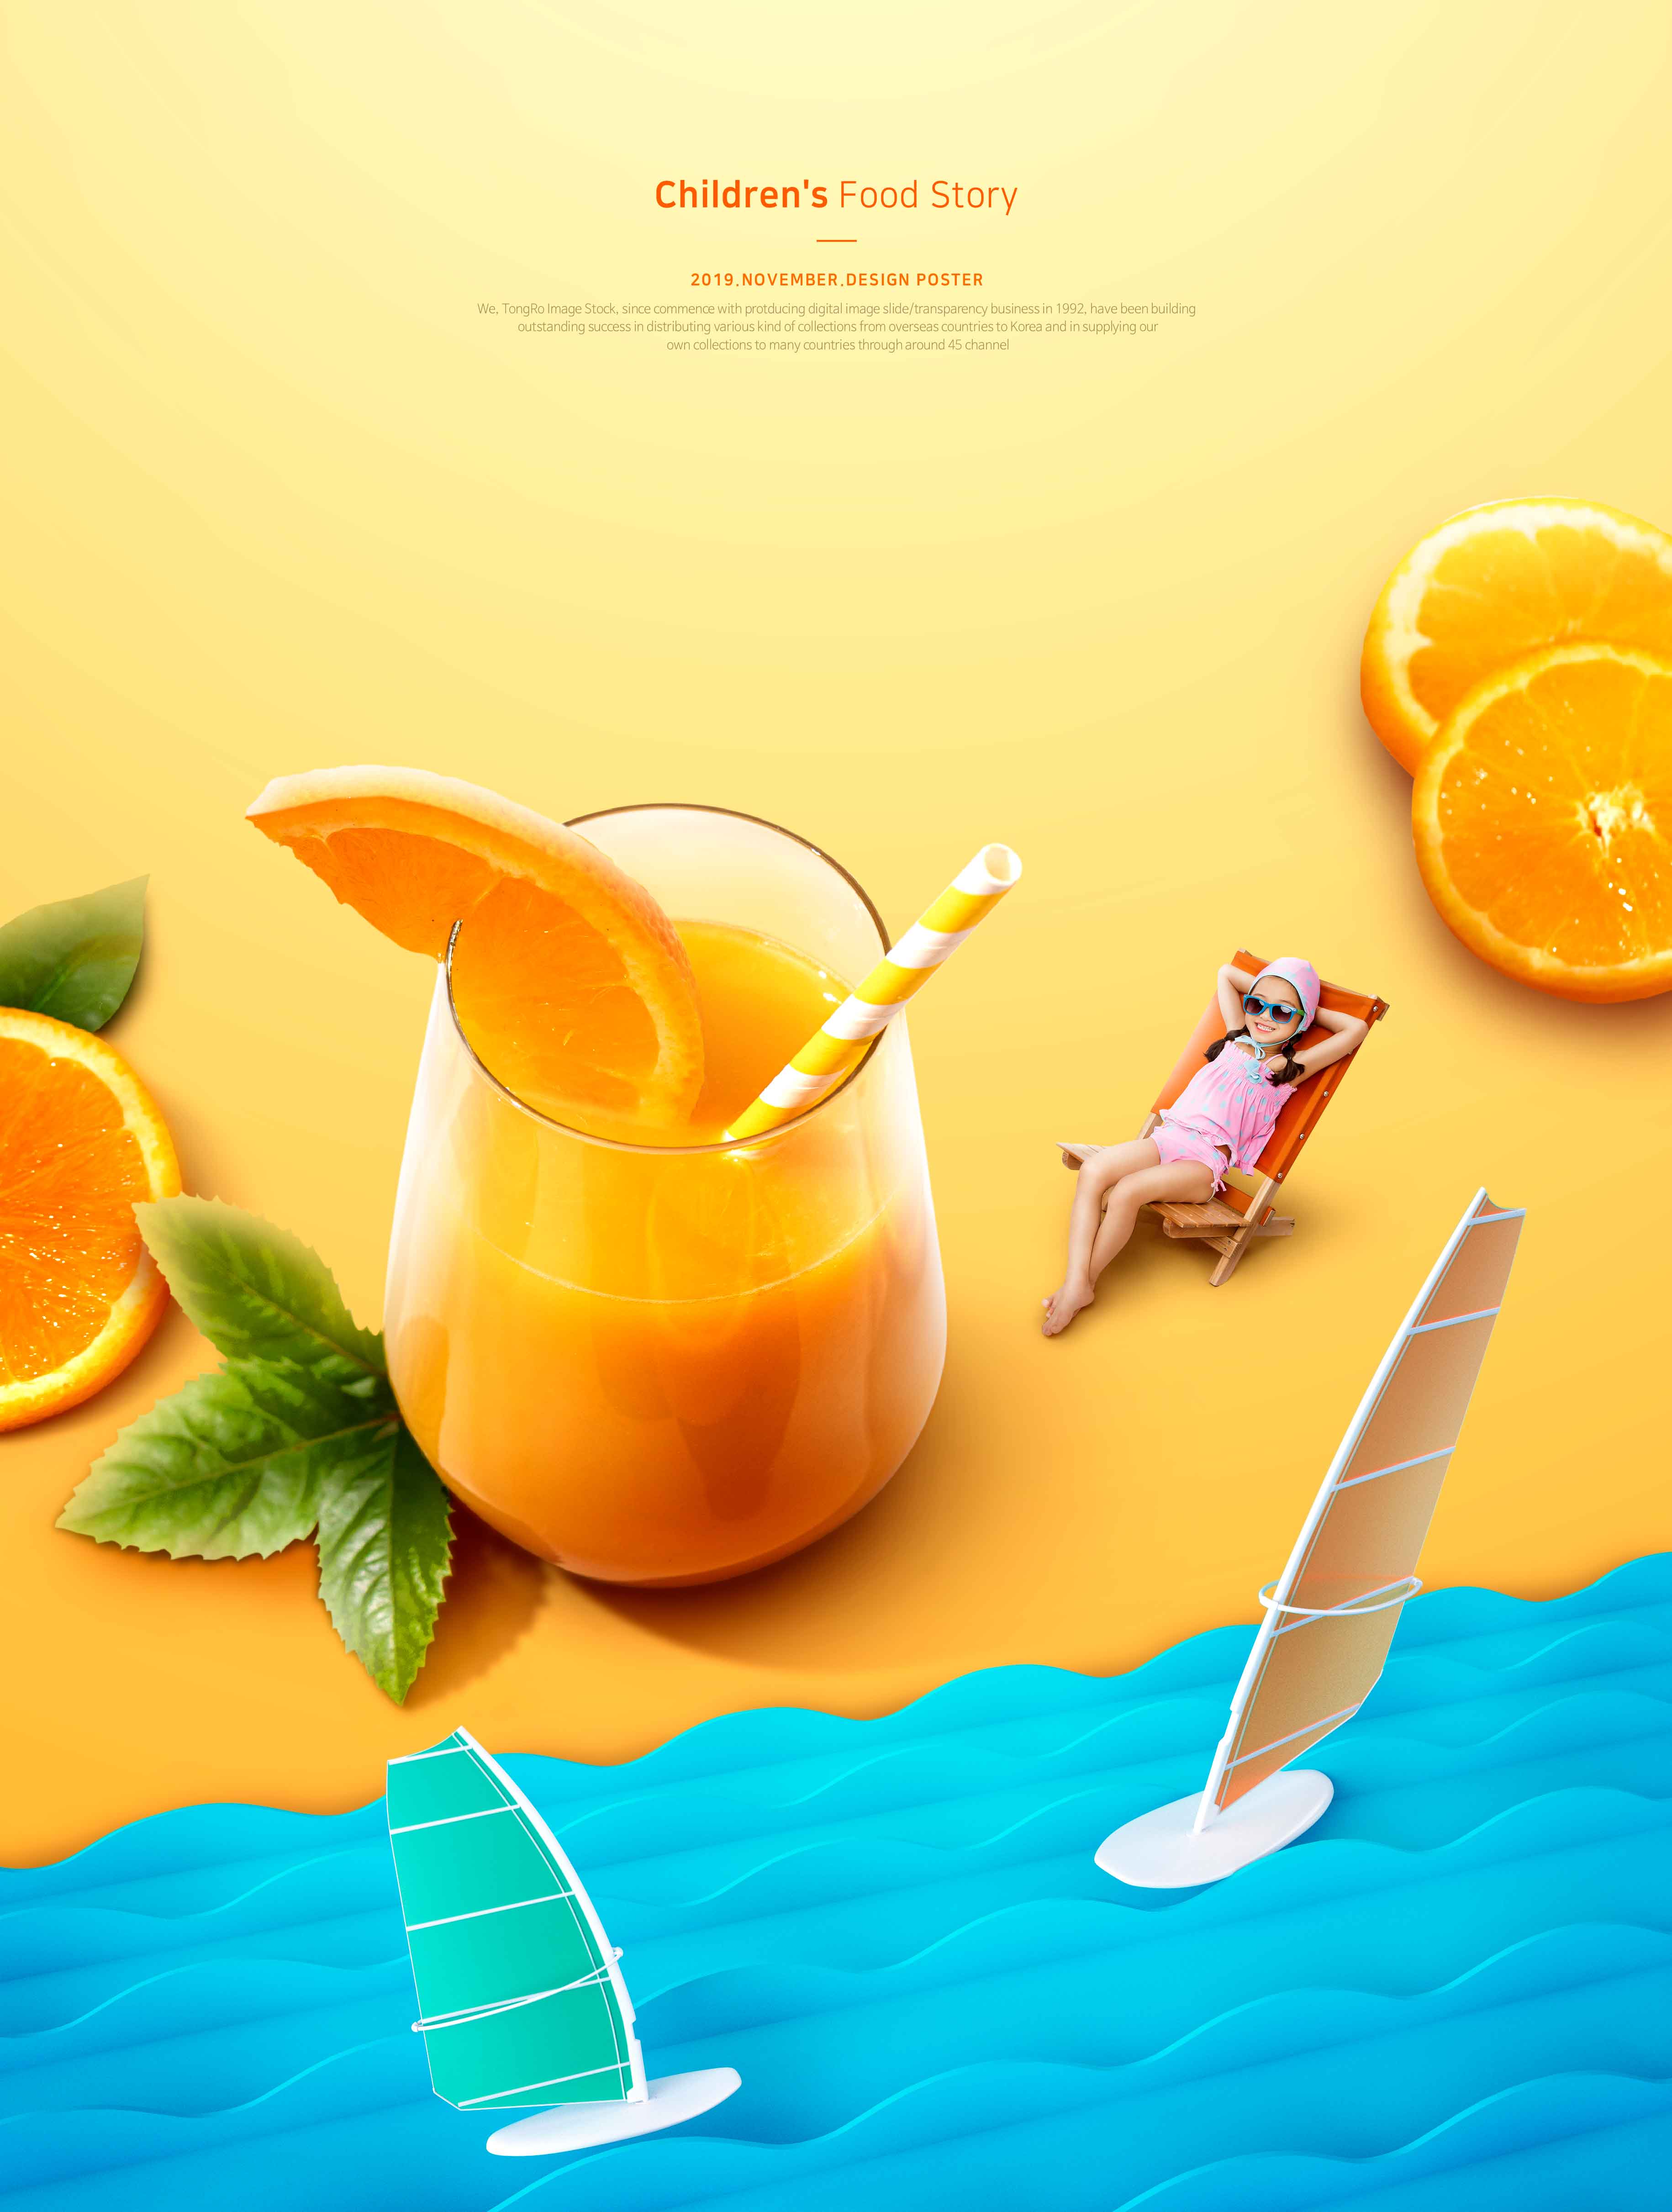 儿童食品故事夏季橙汁推广海报PSD素材16图库精选模板插图